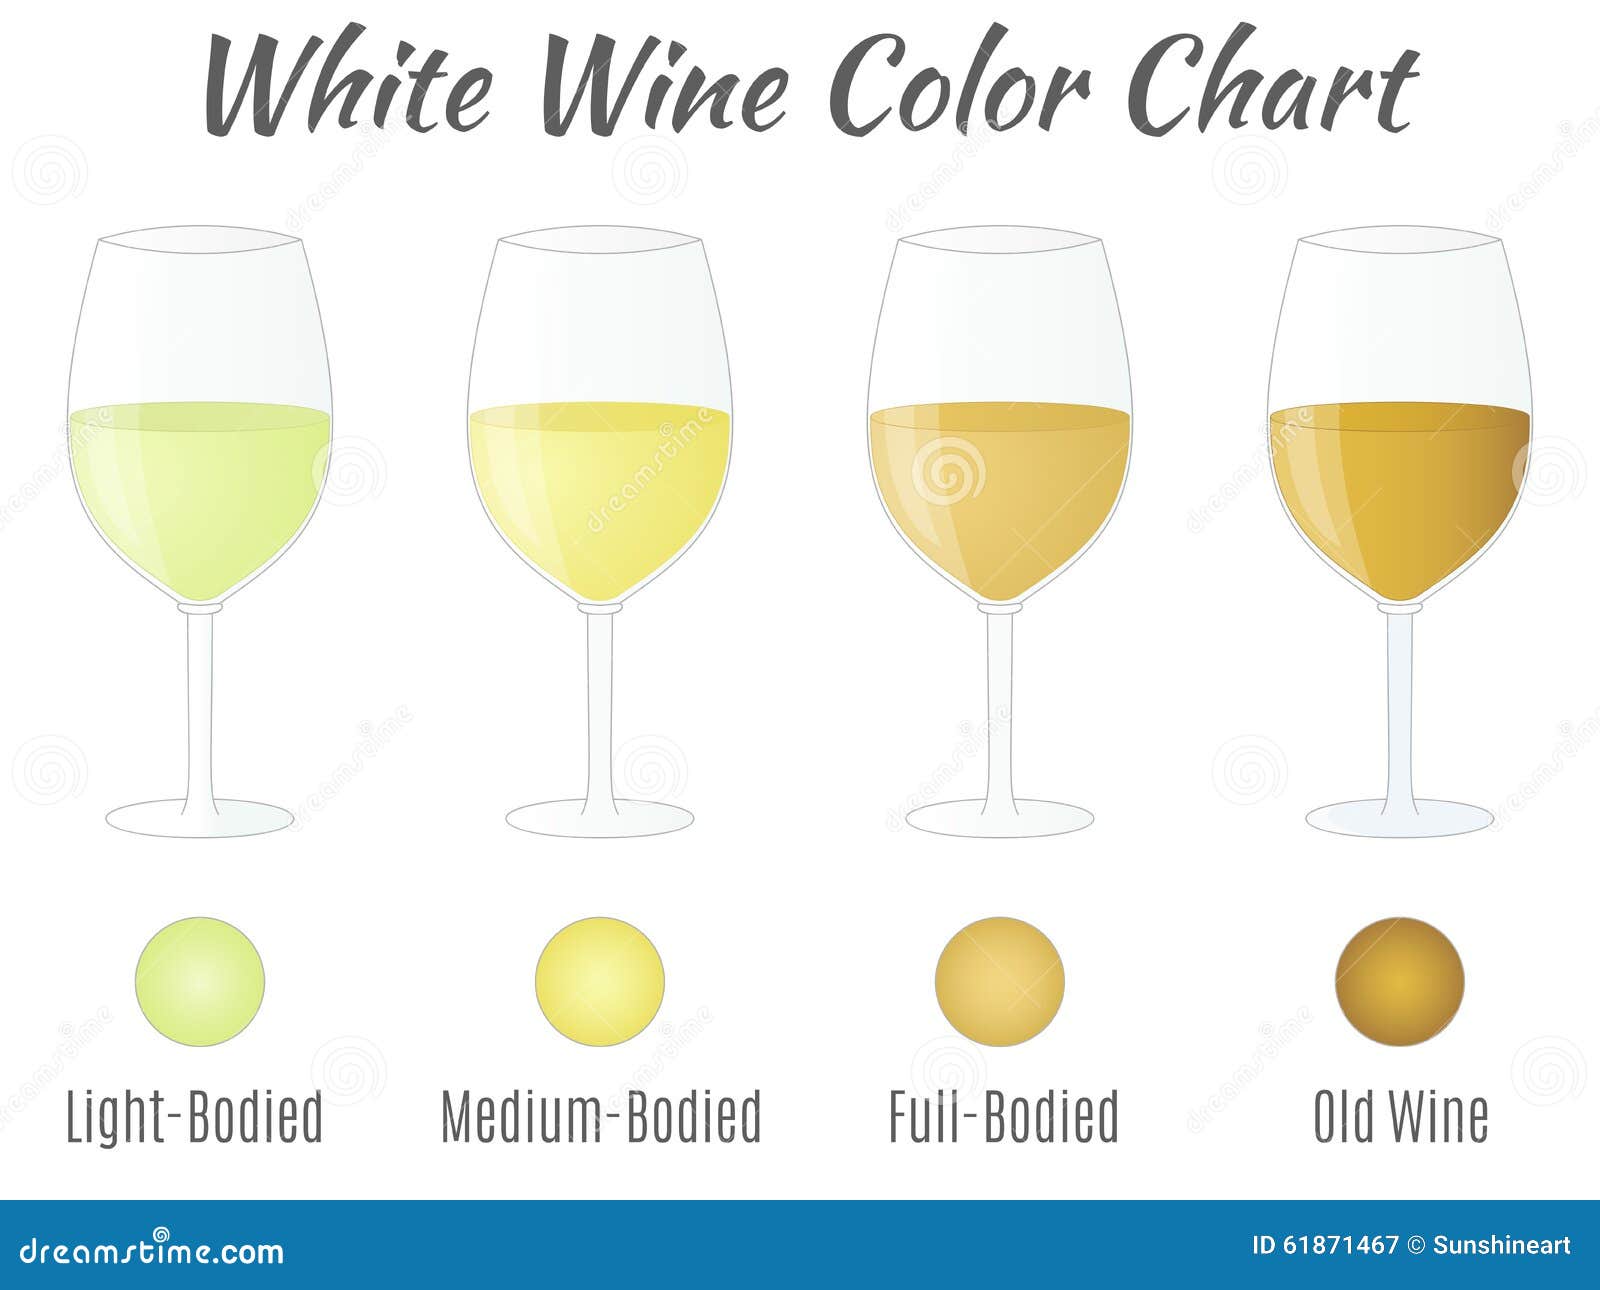 White Wine Types Chart